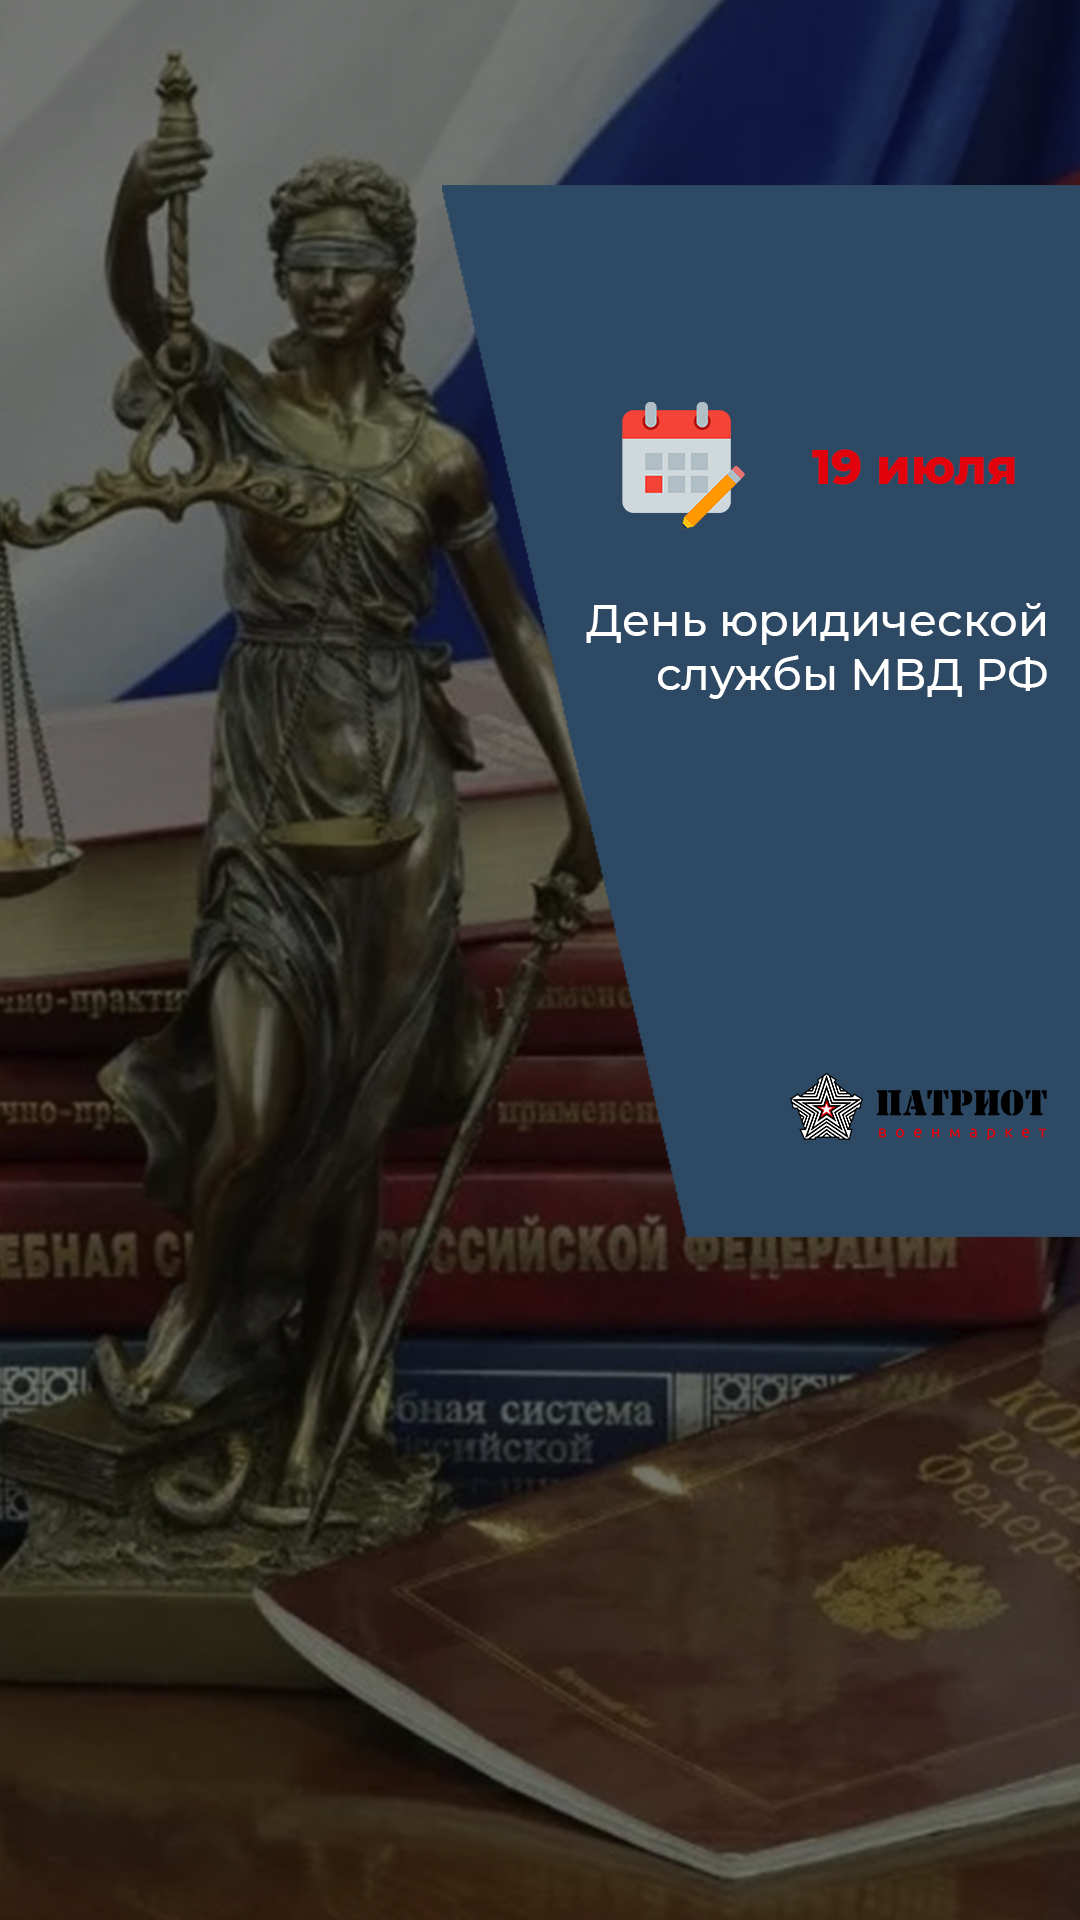 19 июля  - День юридической службы МВД РФ